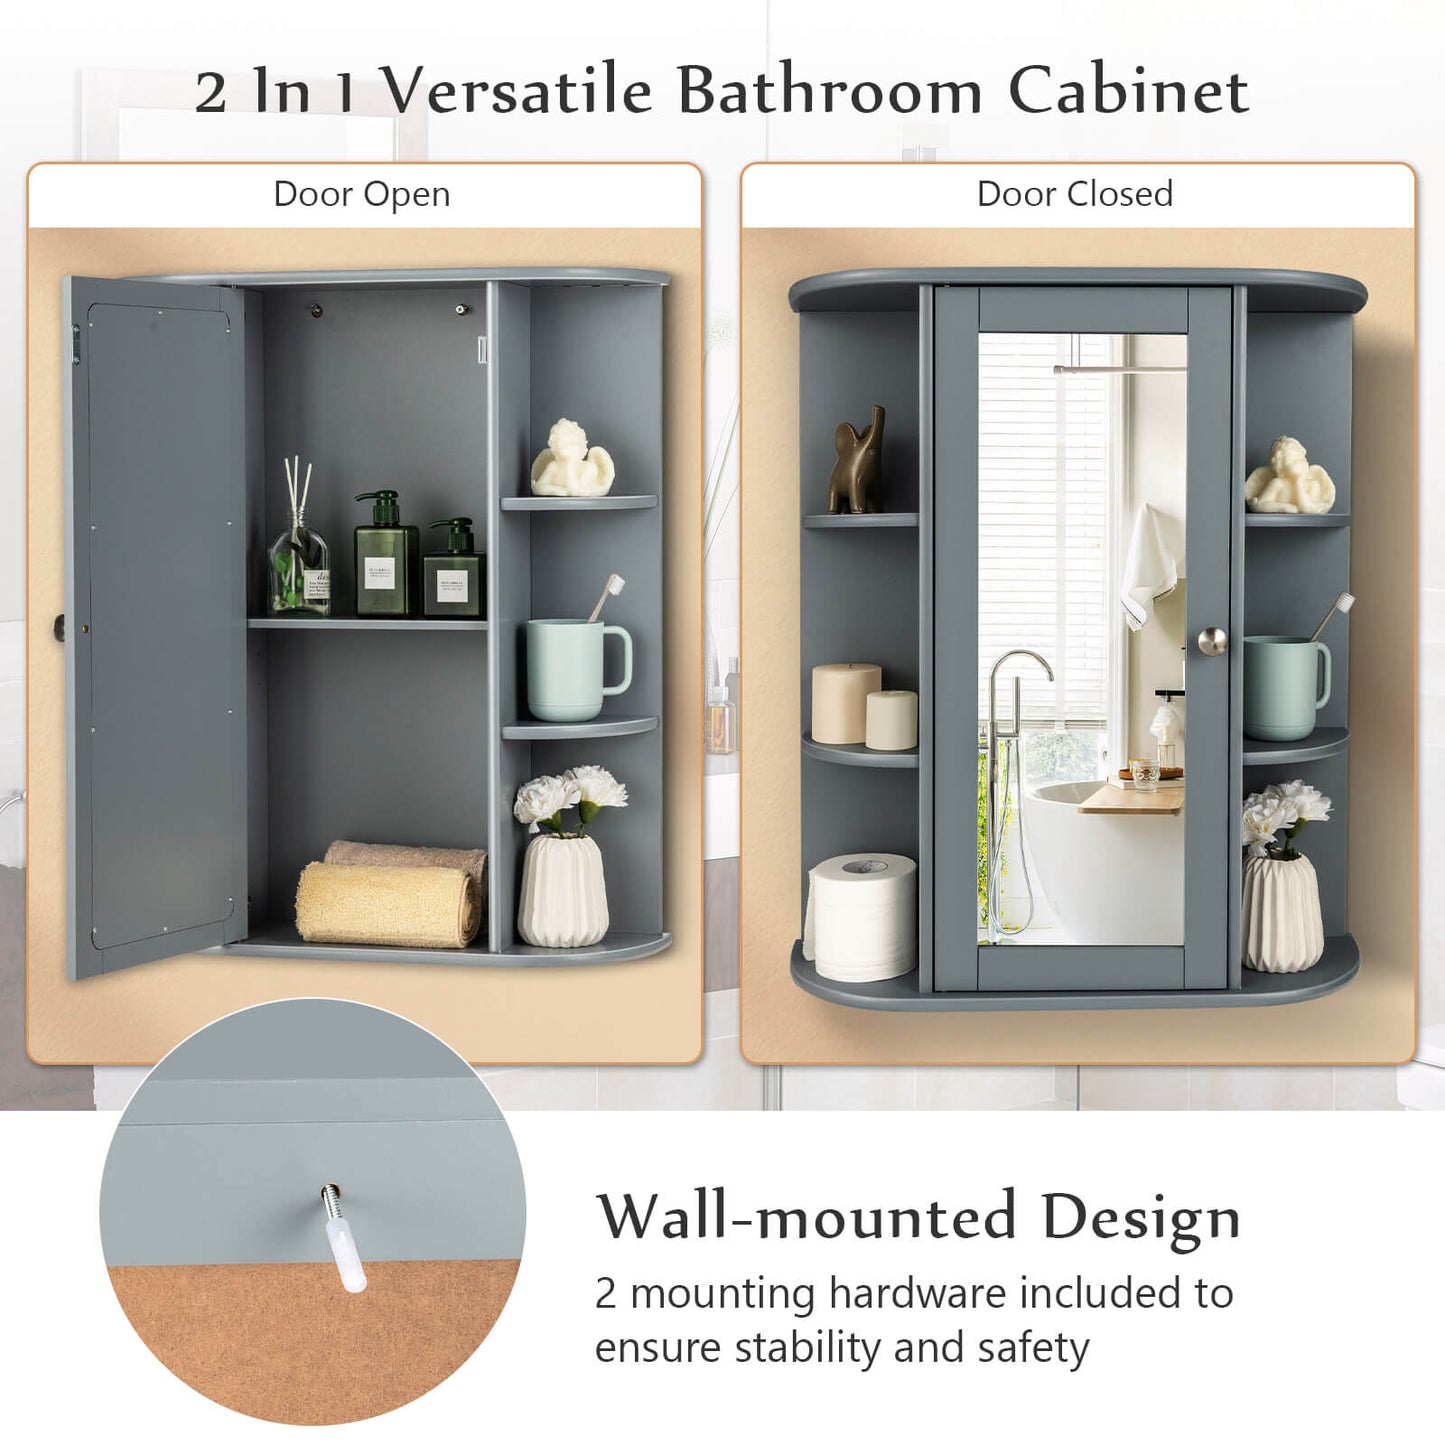 Bathroom Single Door Shelves Wall Mount Cabinet with Mirror, Gray - Gallery Canada